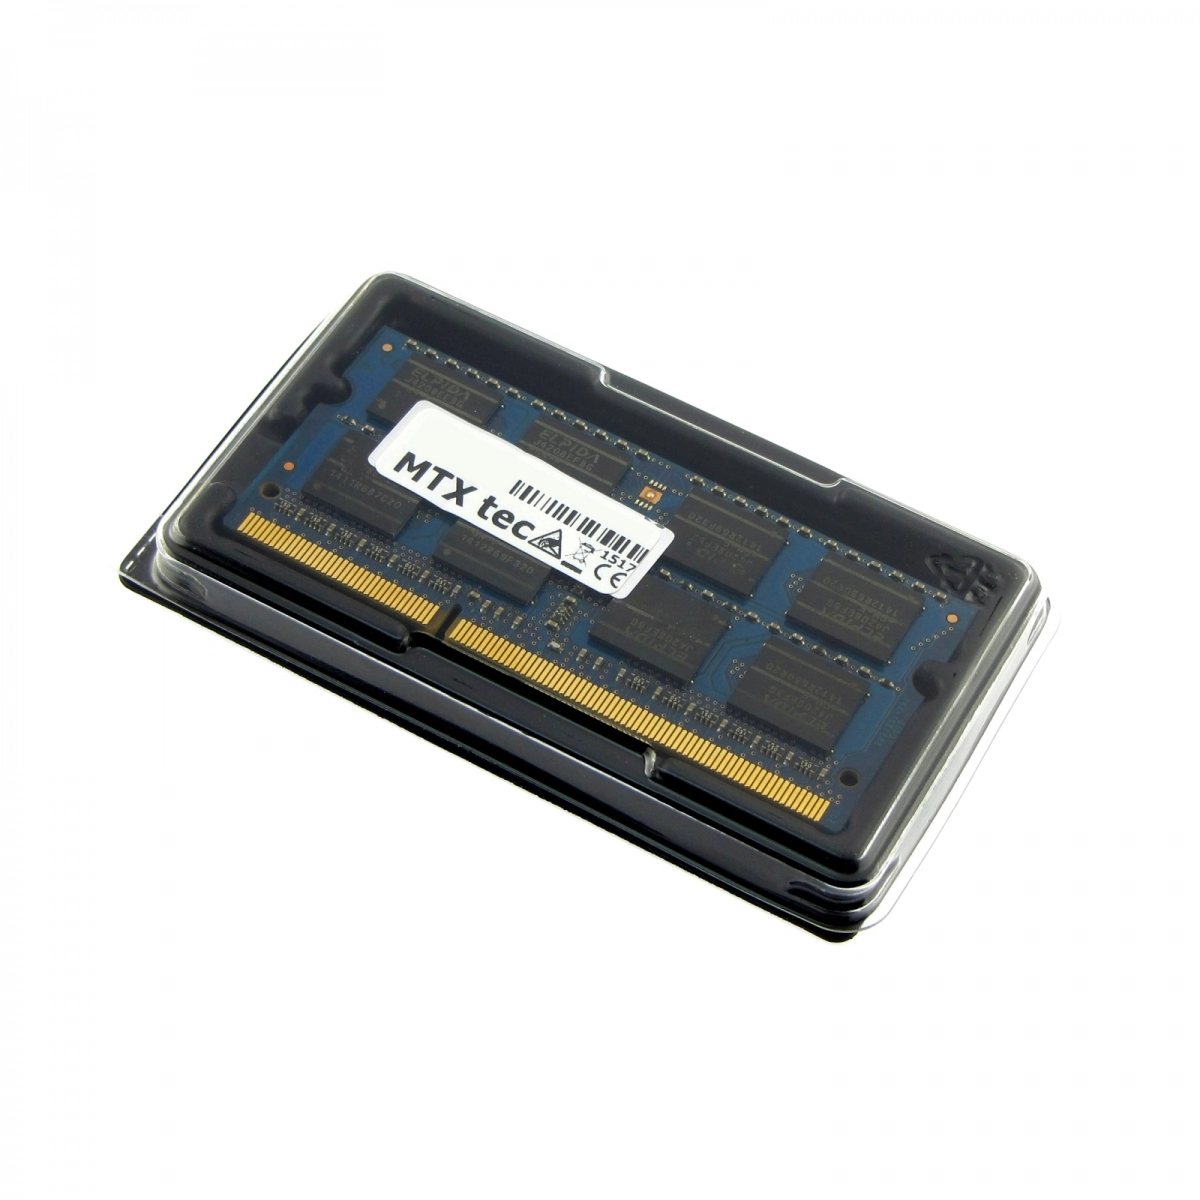 MTXtec Arbeitsspeicher 4 GB RAM für MEDION Akoya E6412T MD99450